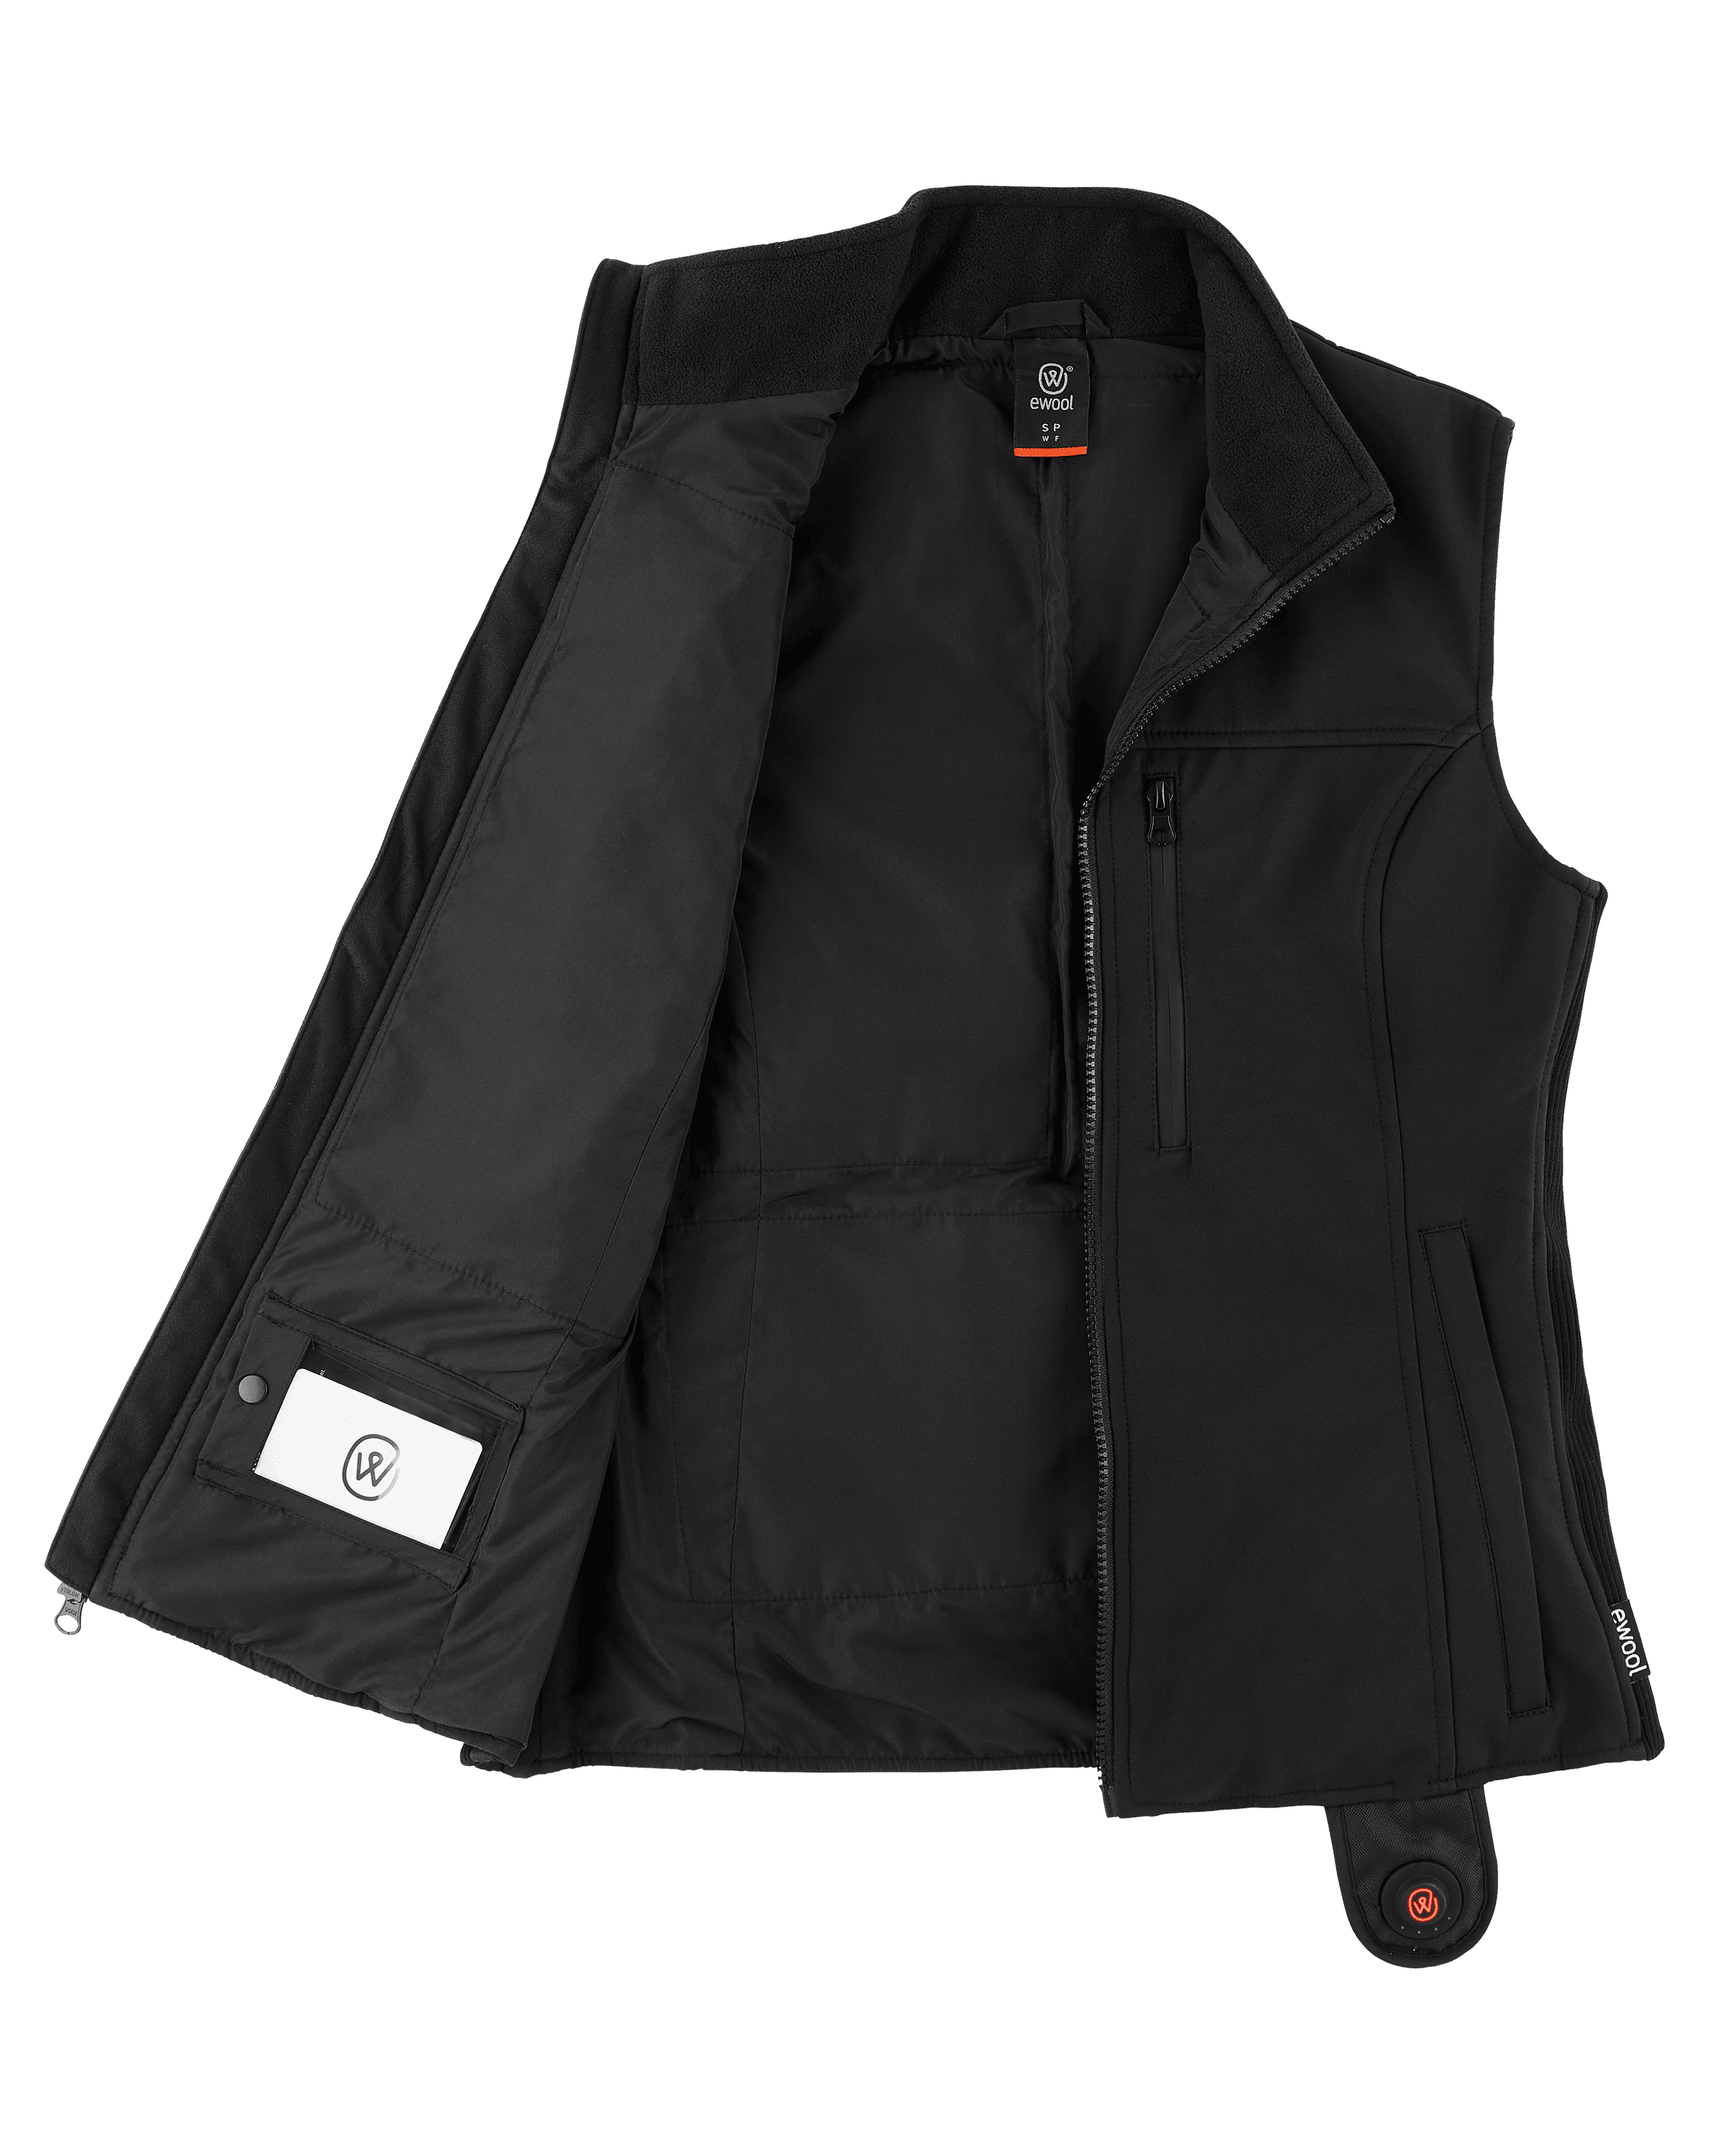 PRO+ Heated Vest for Women (Open Box)